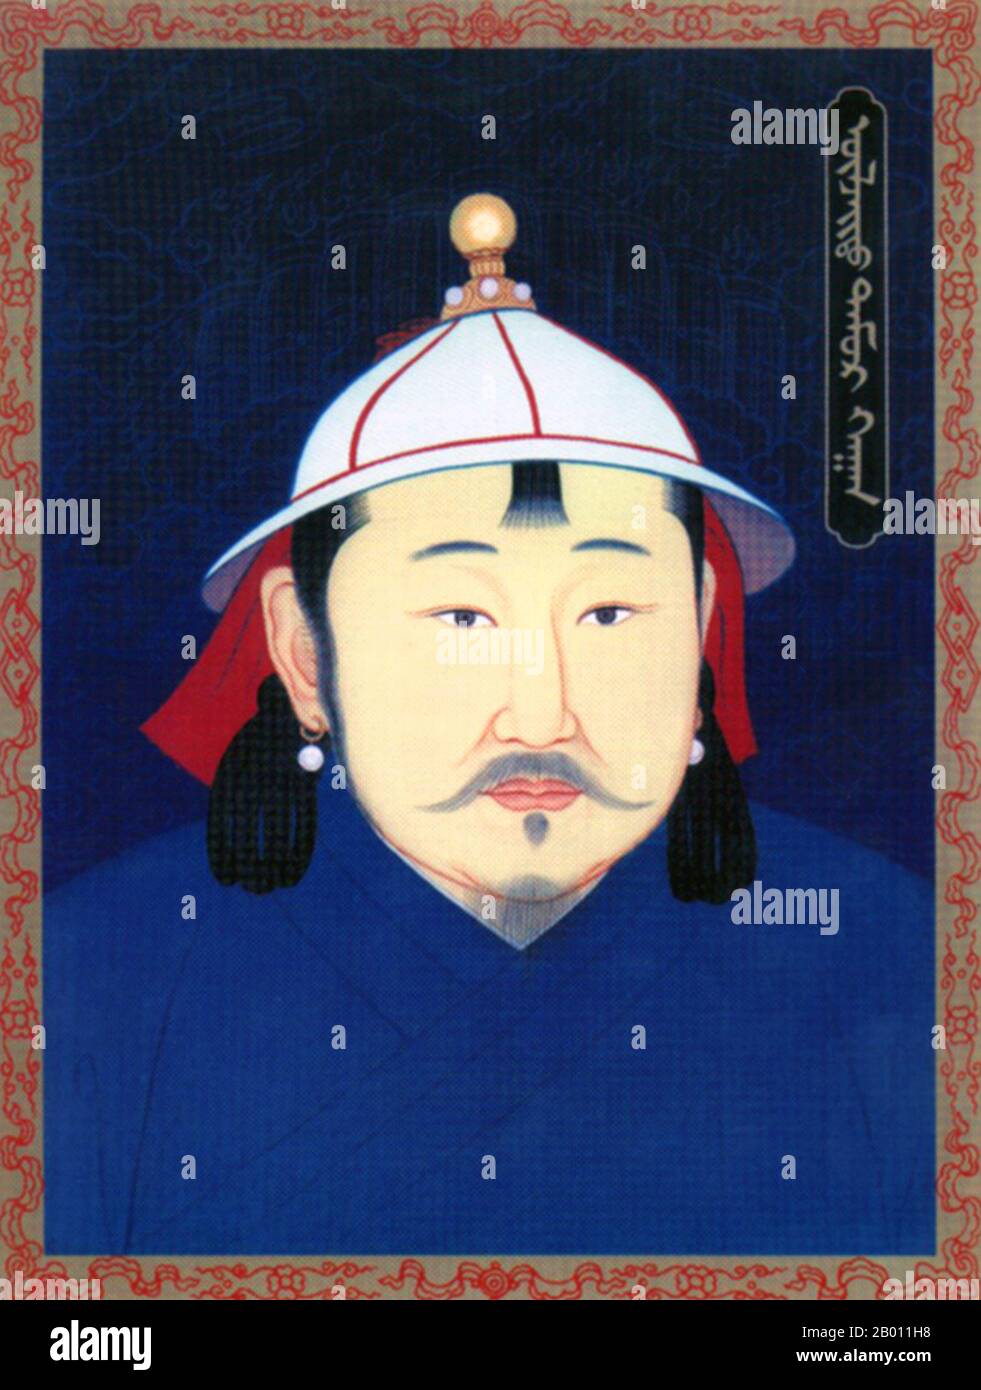 Mongolia/Cina: Temur Khan, VI Khagan dell'Impero Mongolo; II imperatore Yuan Chengzong, XX secolo. Temur Khan (Timur, 15 ottobre 1265 – 1307 febbraio 1307) è stato il secondo leader della dinastia Yuan tra il 10 maggio 1294 e il 10 febbraio 10, ed è considerato il sesto Grande Khan dei Mongoli in Mongolia. Era figlio del principe ereditario Zhenjin e nipote di Kublai Khan. Durante il suo governo, le dinastie Tran, Pagan e Champa e i khanati occidentali dell'Impero Mongolo accettarono la sua supremazia. Foto Stock